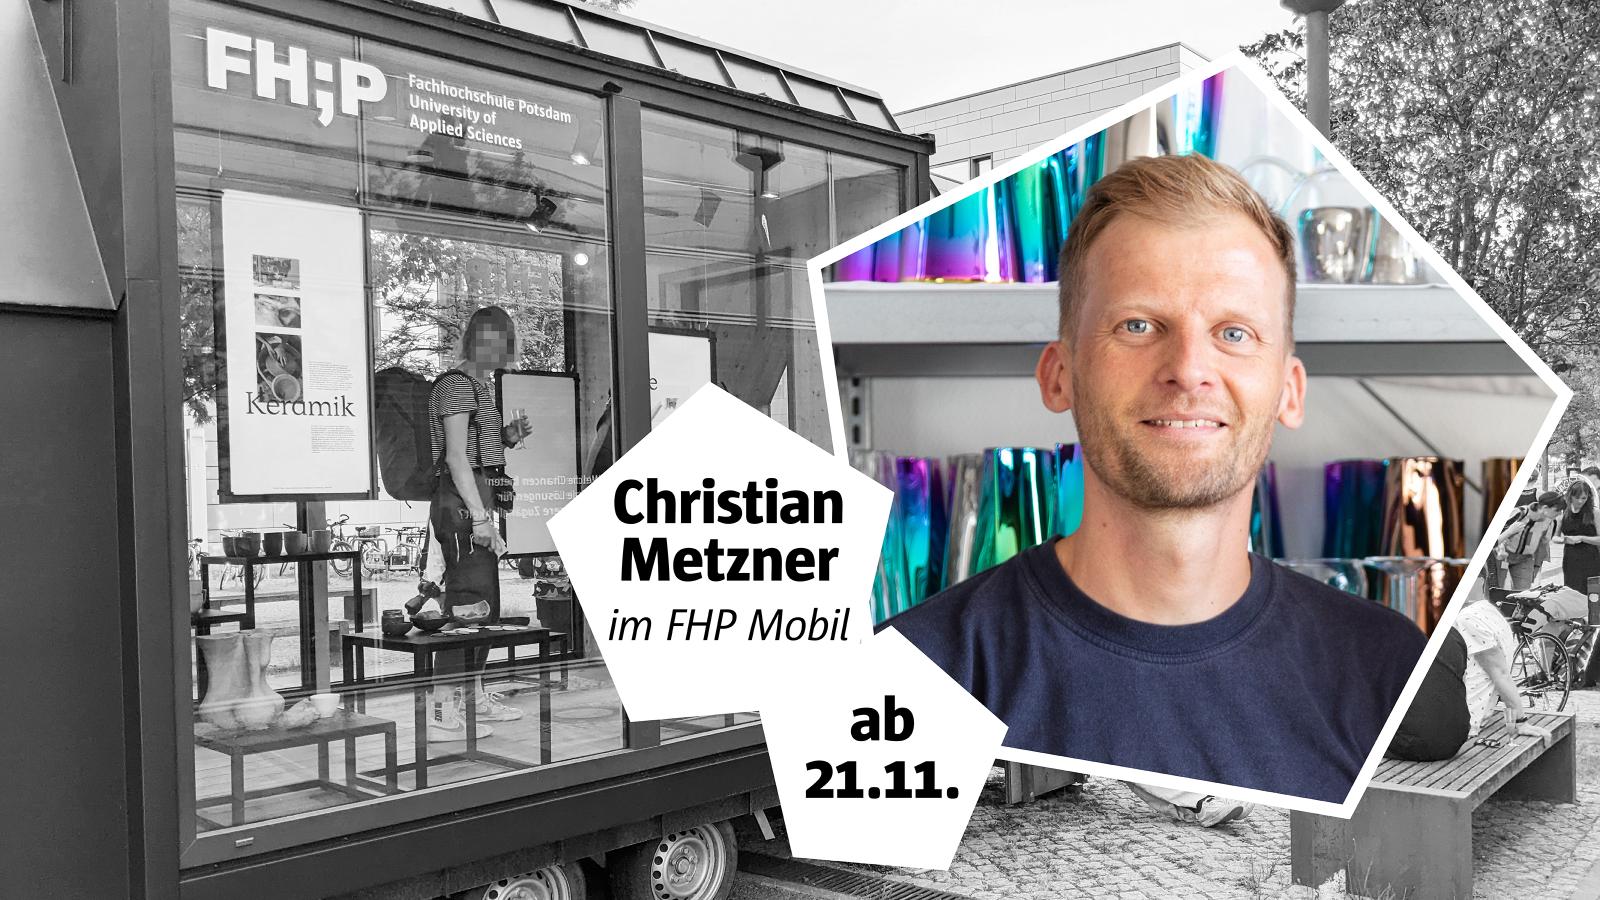 Collage aus dem FHP Mobil in Schwarzweiß und Gründer Christian Metzner als farbiges Porträtfoto